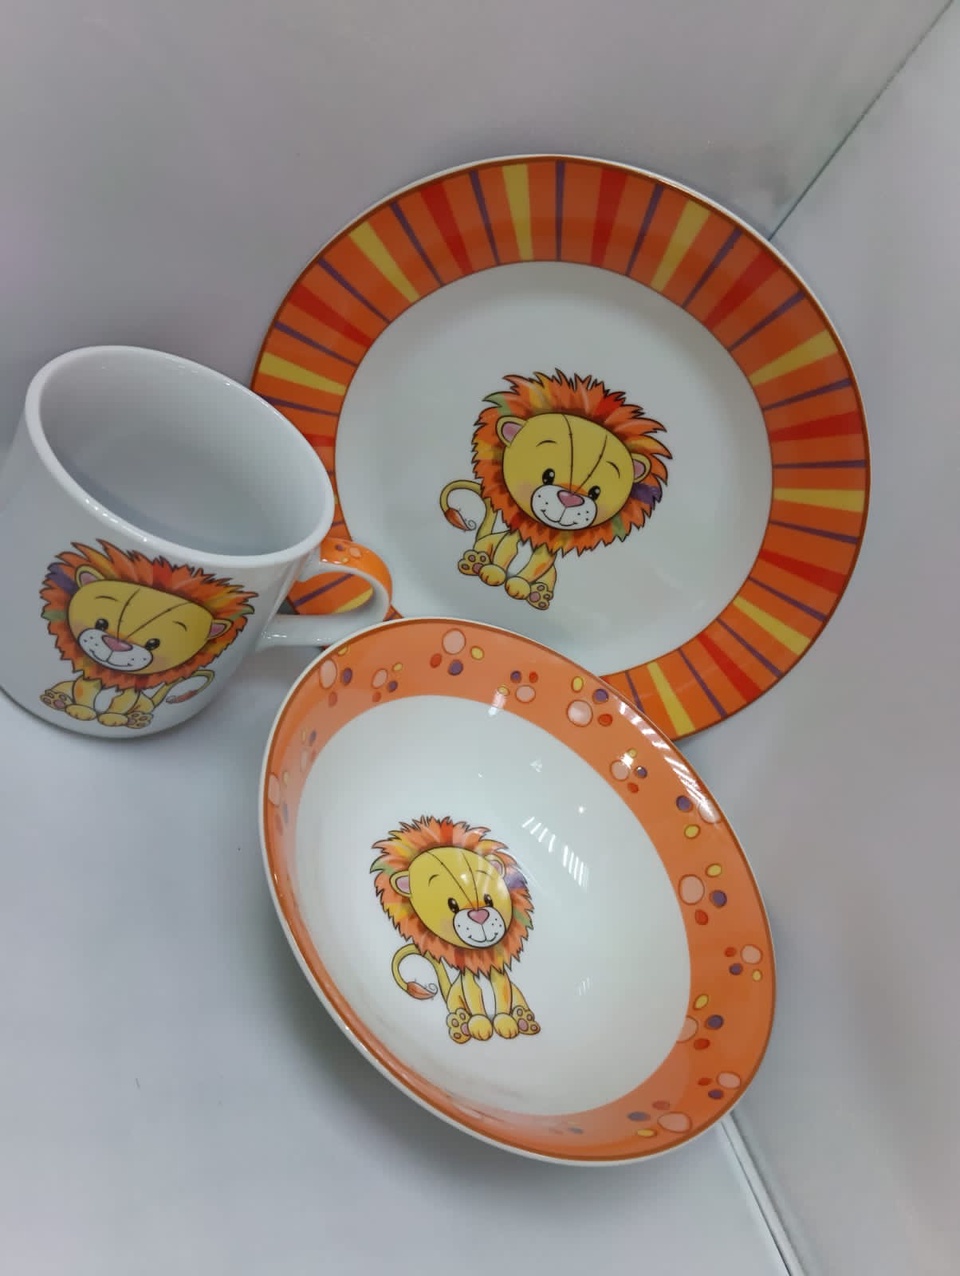 Набор посуды для детей - 1 025 ₽, заказать онлайн.